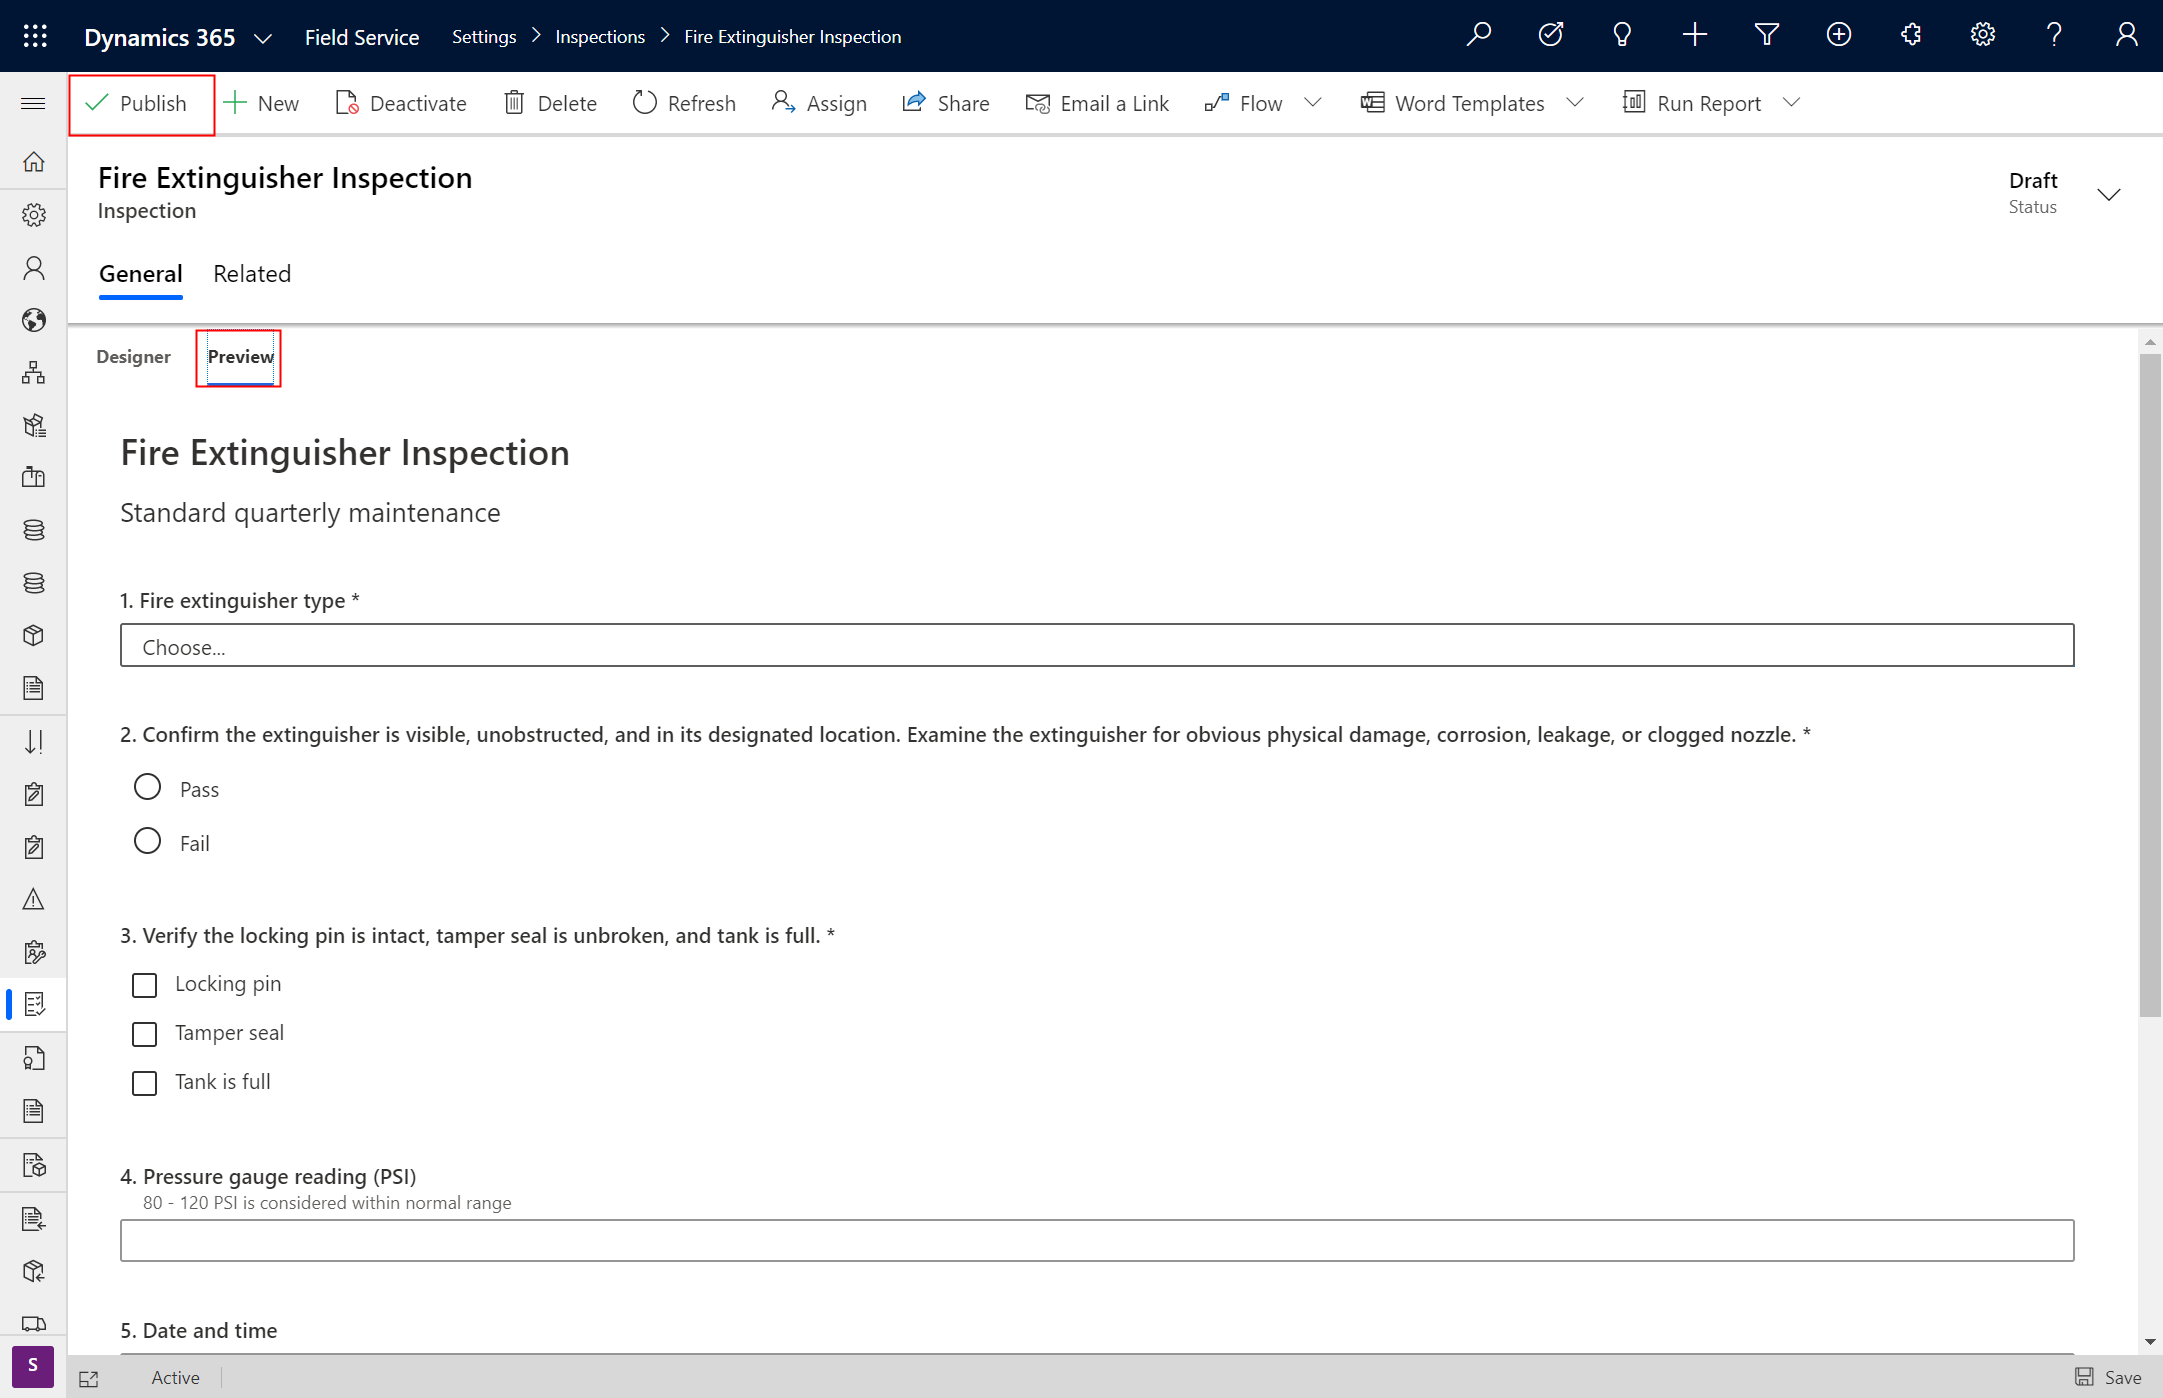 Captura de tela da inspeção do Field Service realçando a guia de versão preliminar e a opção de publicação.